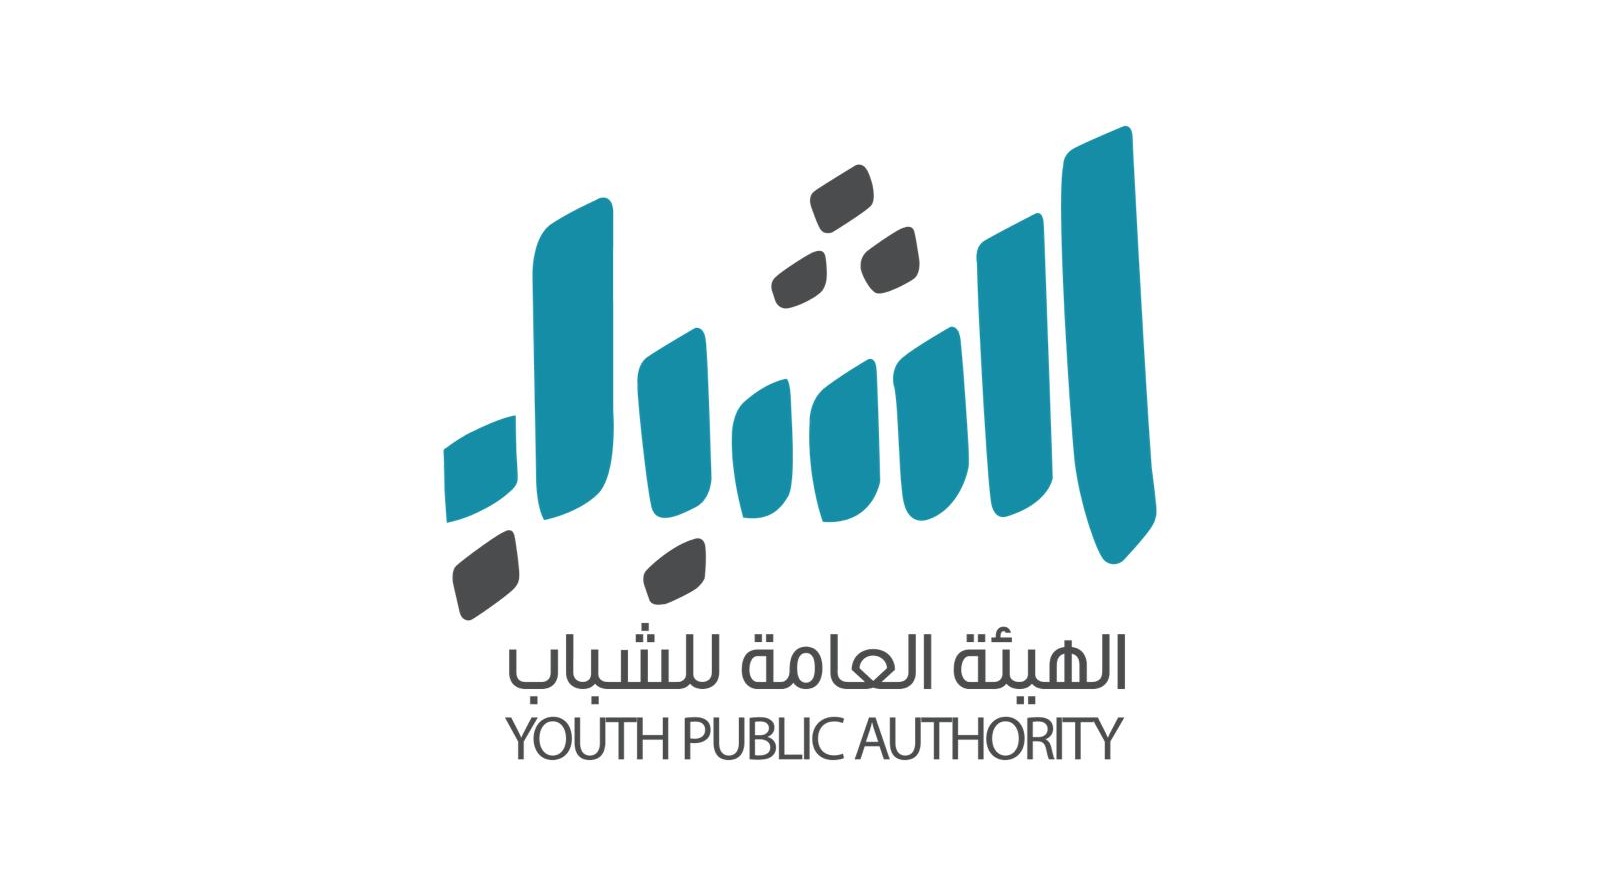 (هيئة الشباب) تفتح باب التسجيل في مشروع (منجز) لدعم الشباب الكويتي أصحاب الإنجازات                                                                                                                                                                        